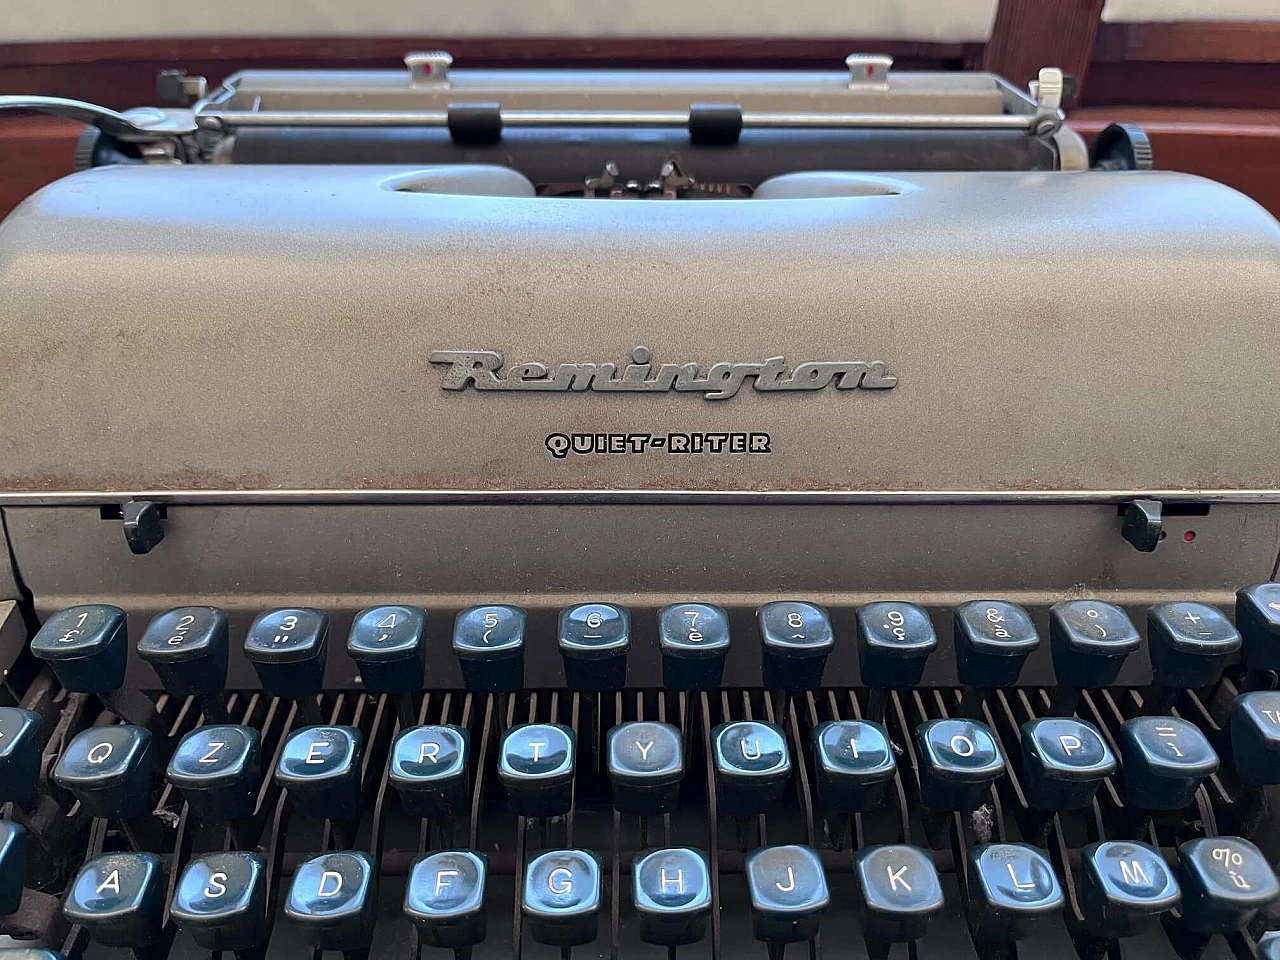 Remington Quiet-Riter typewriter, 1960s 3